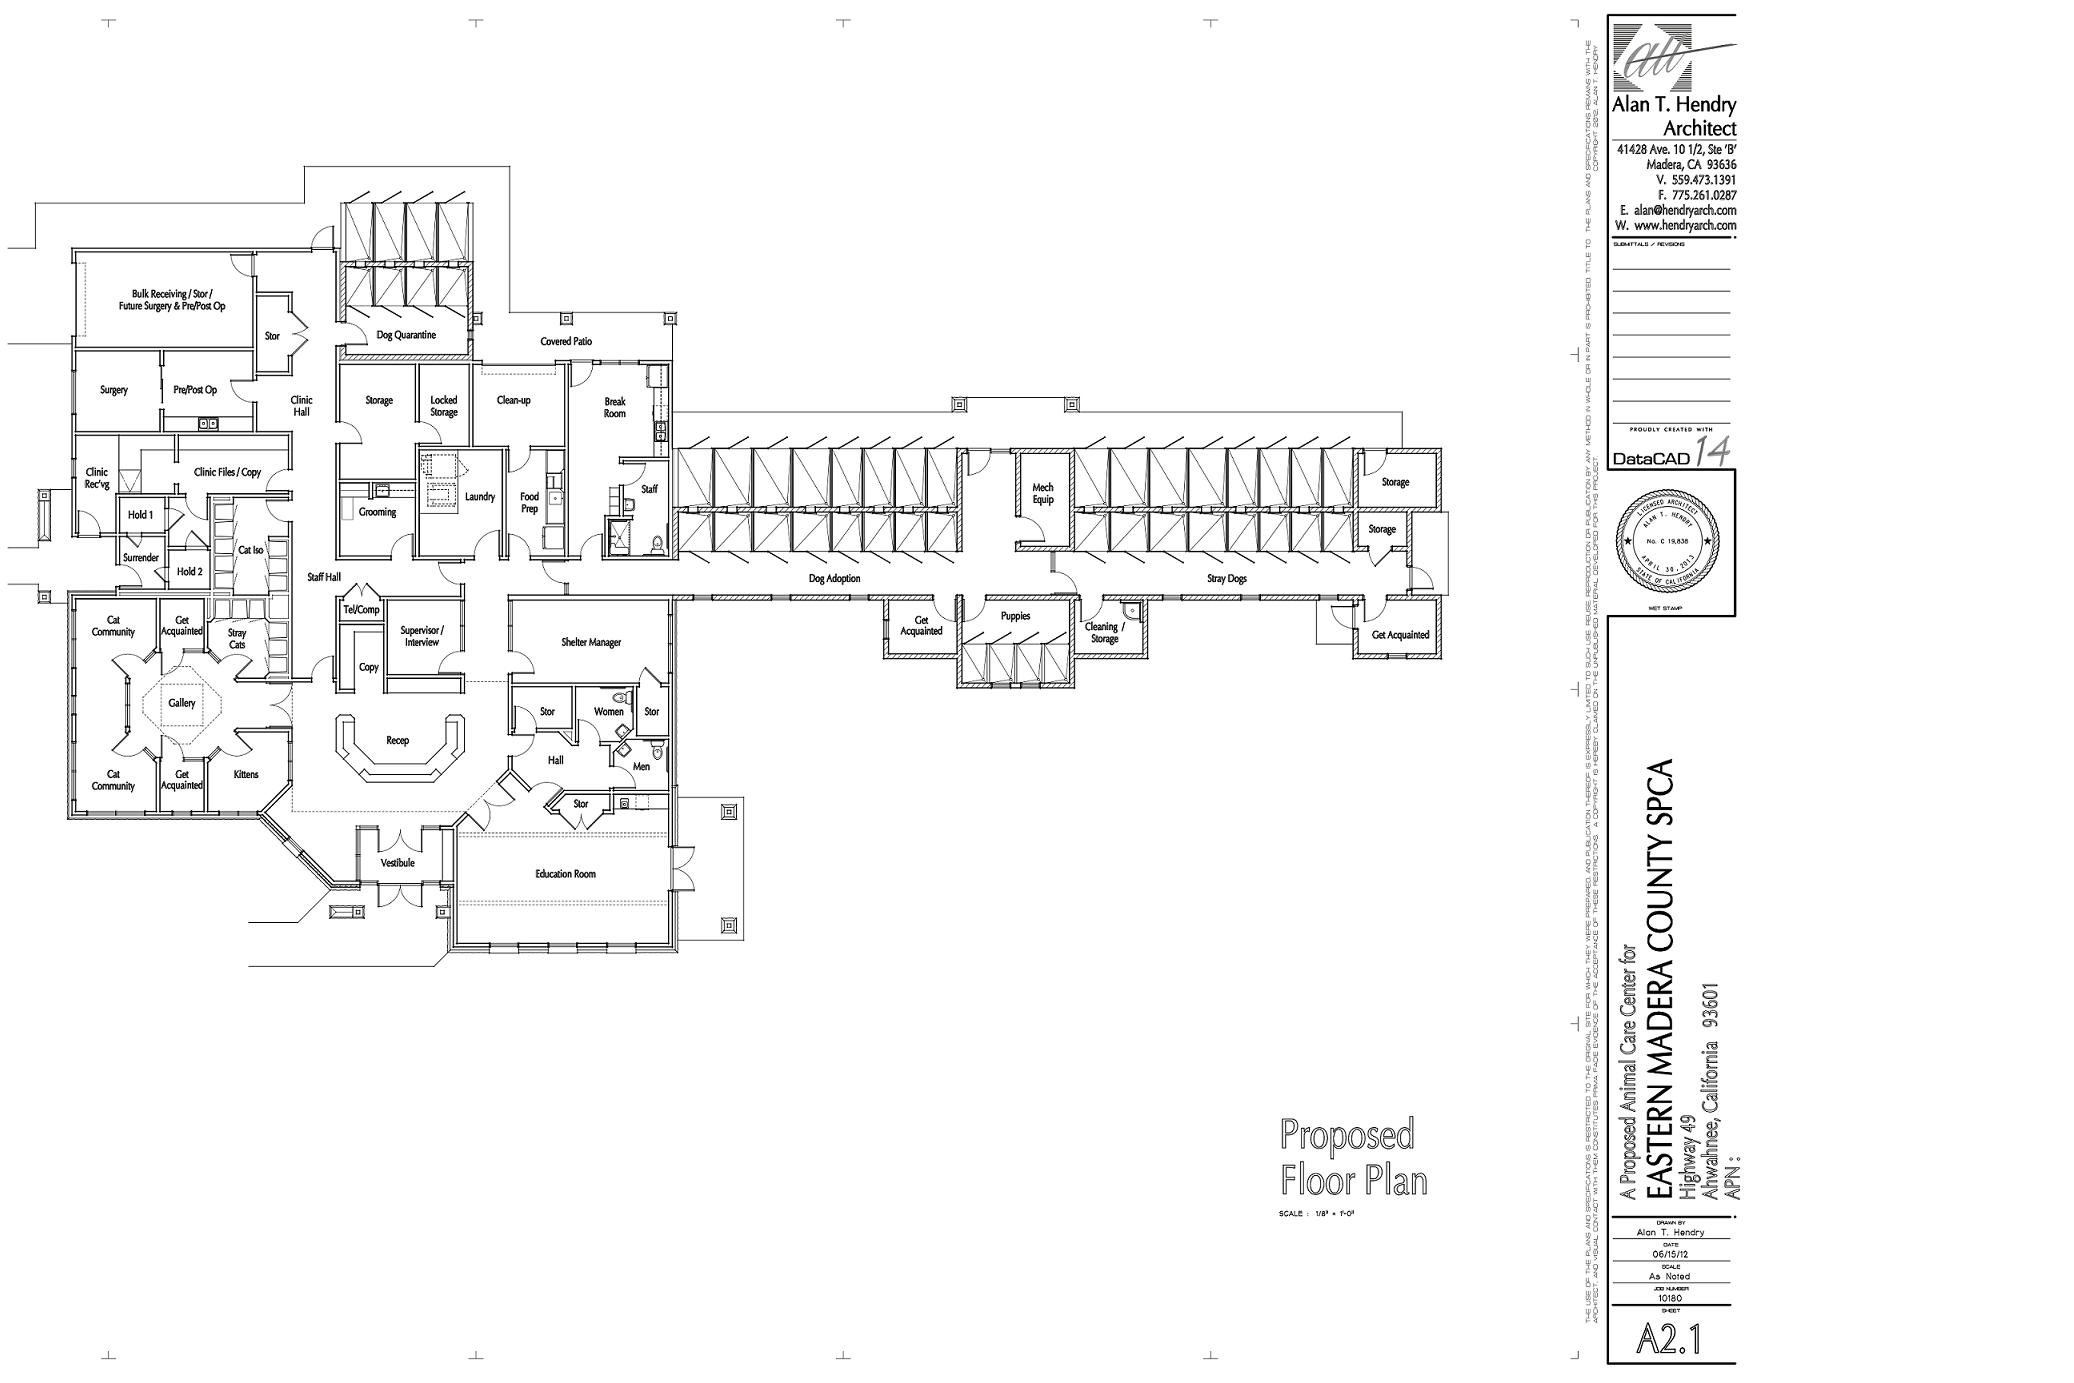 EMC SPCA Floor Plan - 06-29-12